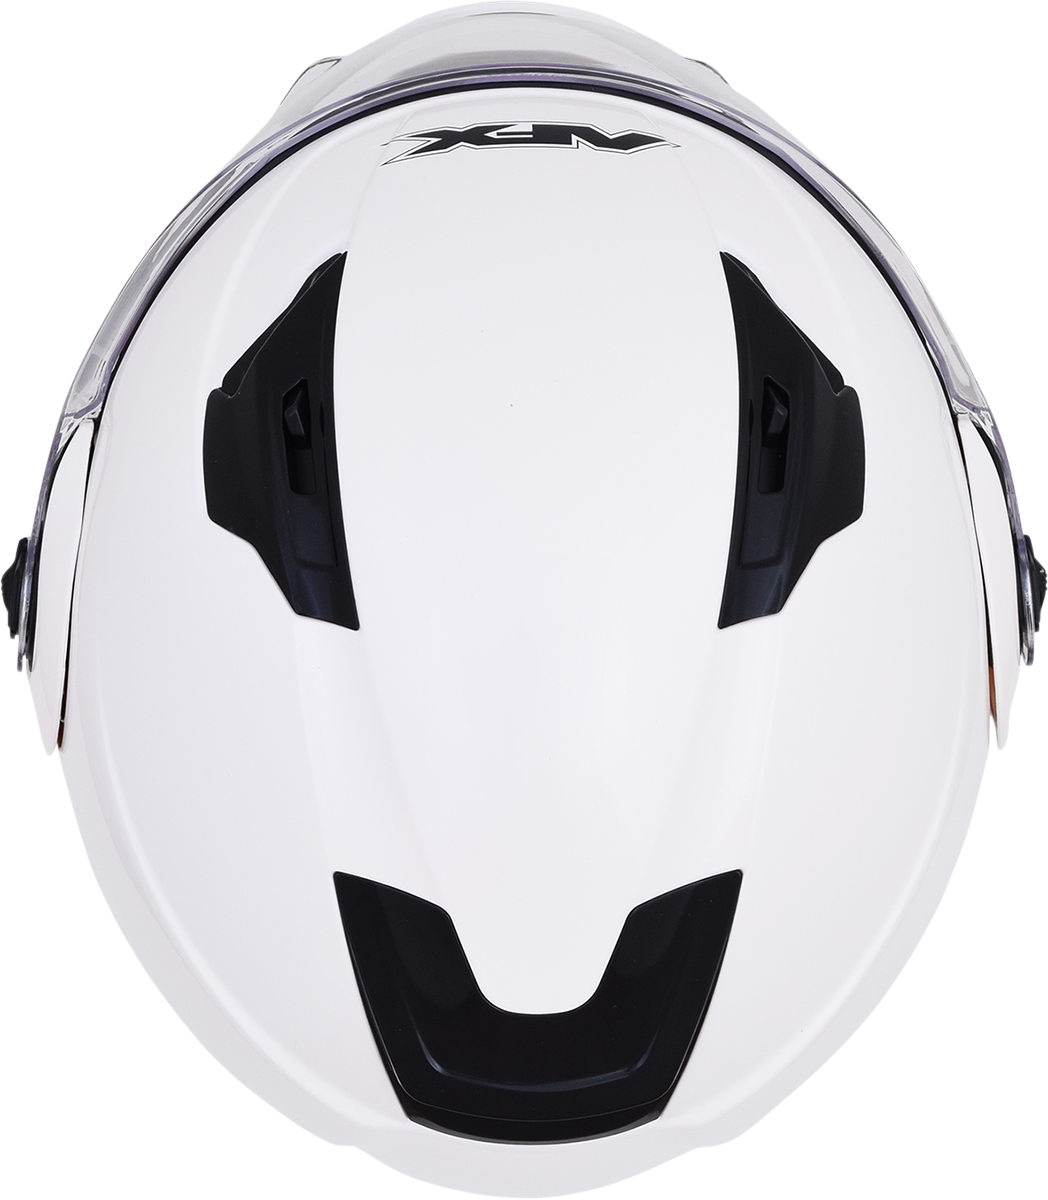 AFX FX-111 Helmet - Pearl White - XL 0100-1797